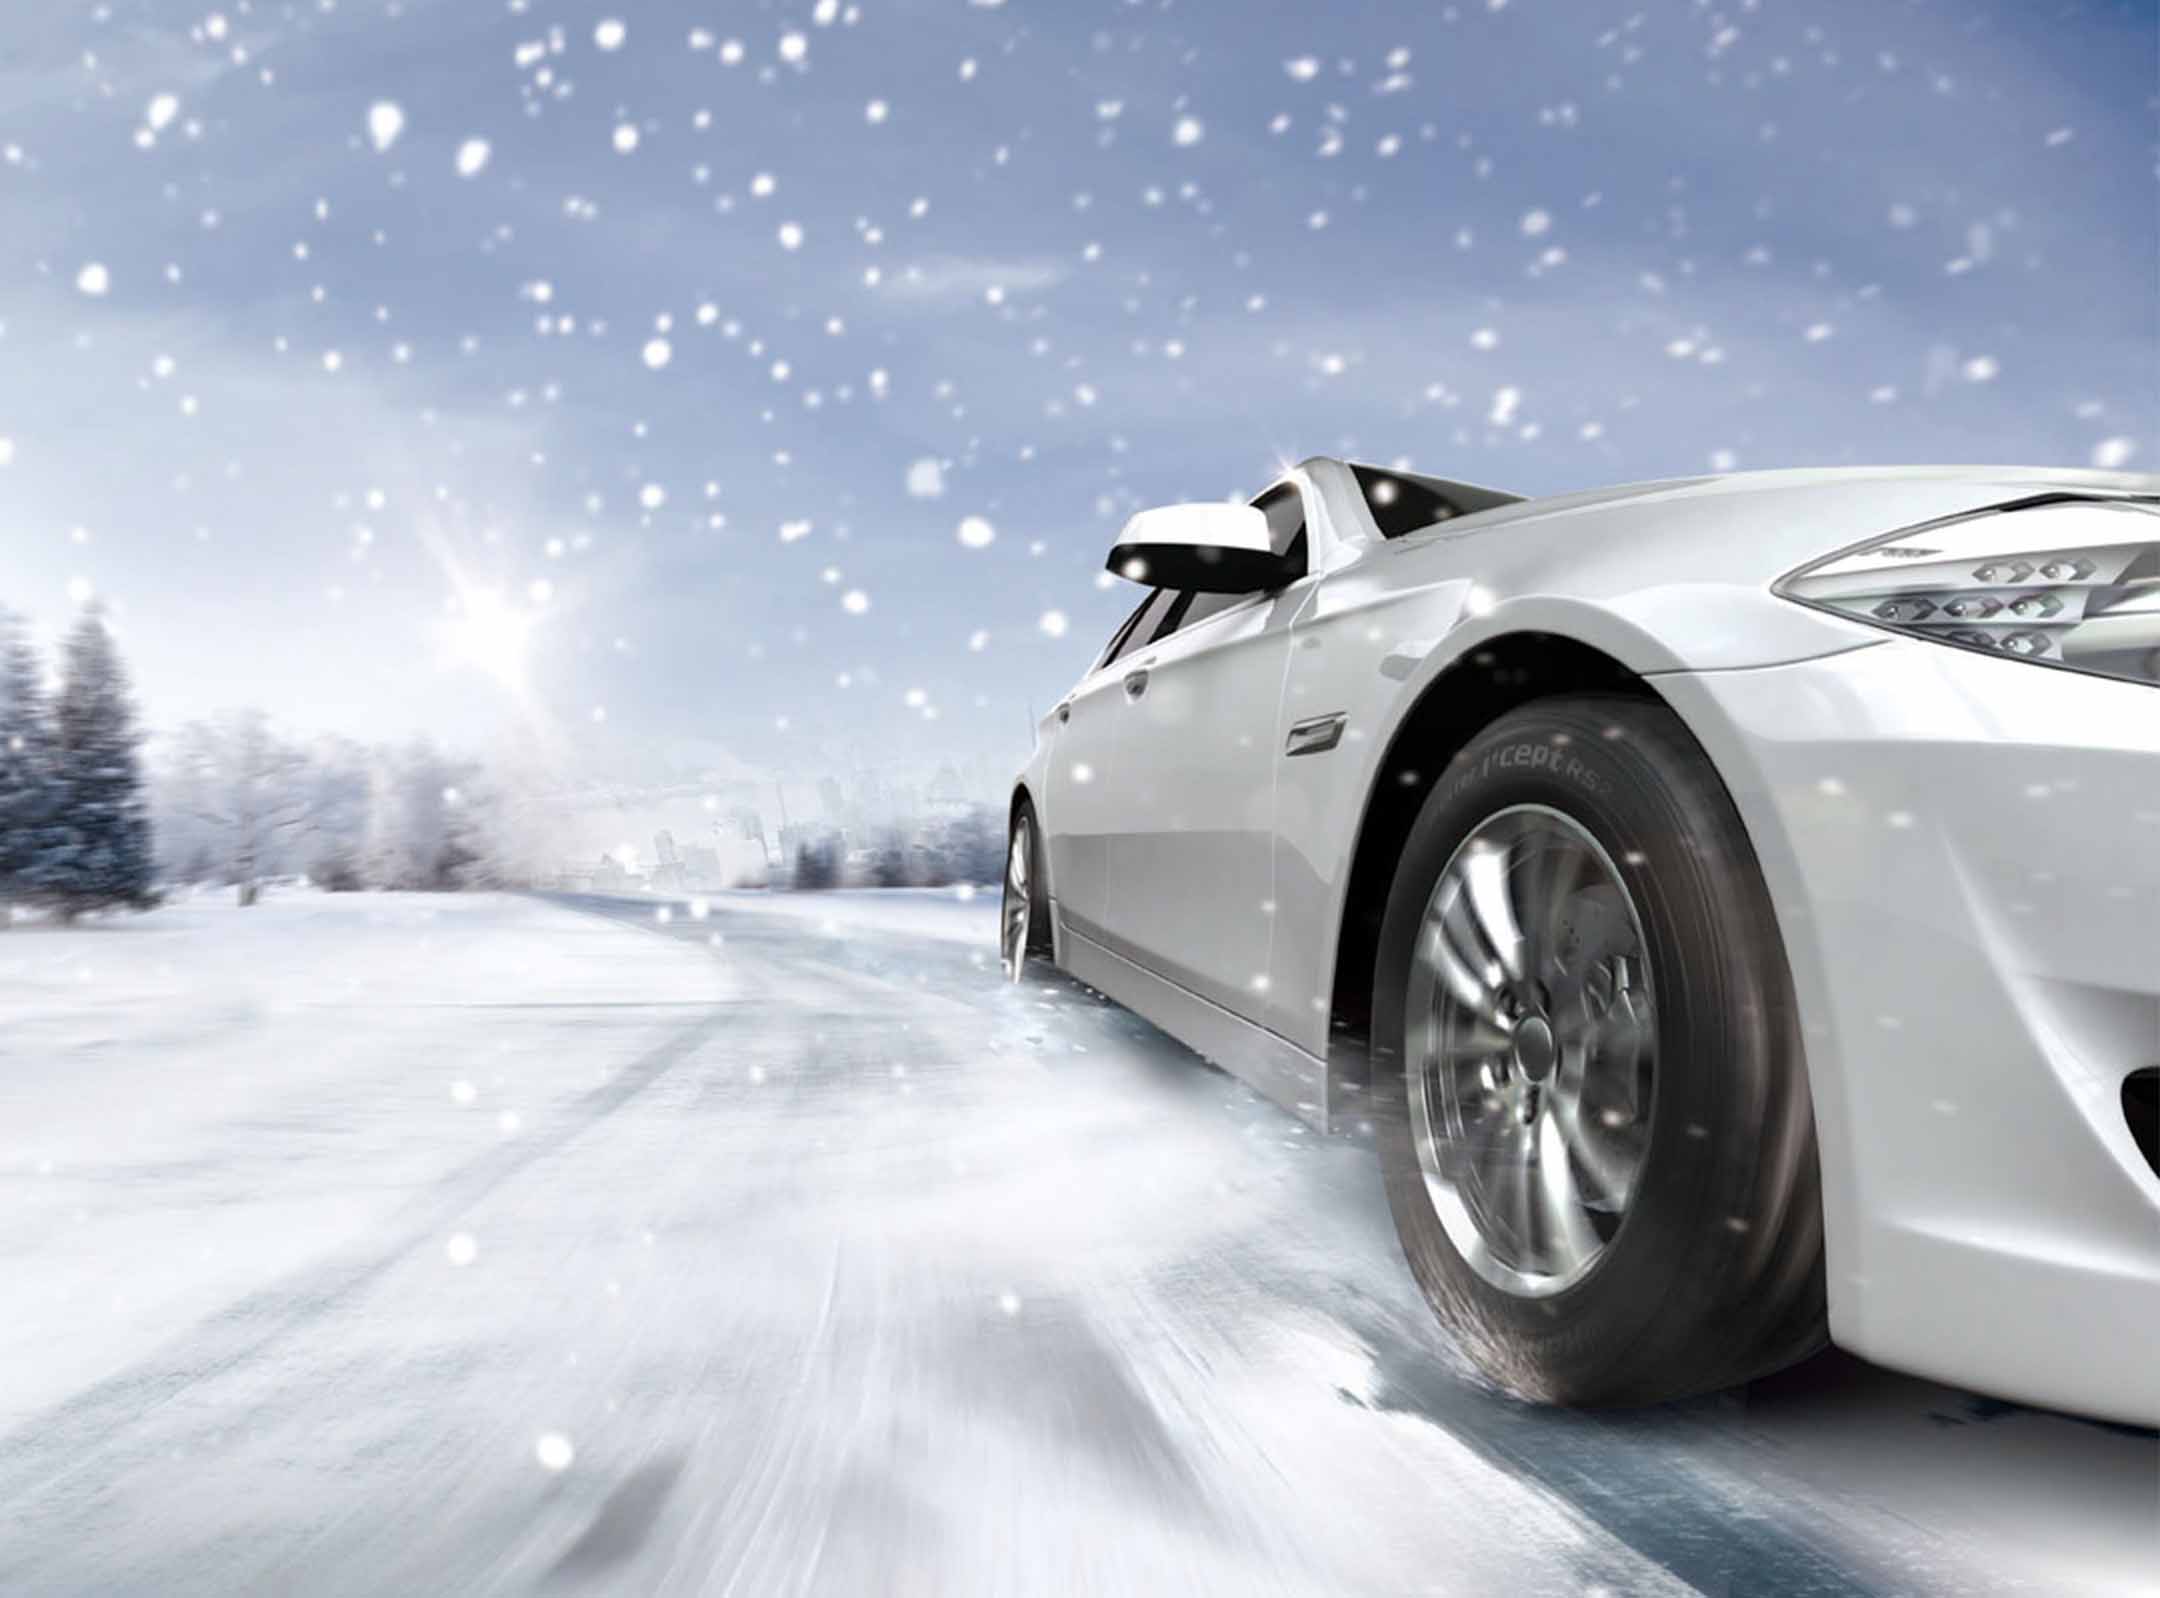 Winter i*cept RS2 W452 - Winter i*cept | Hankook Tire Deutschland